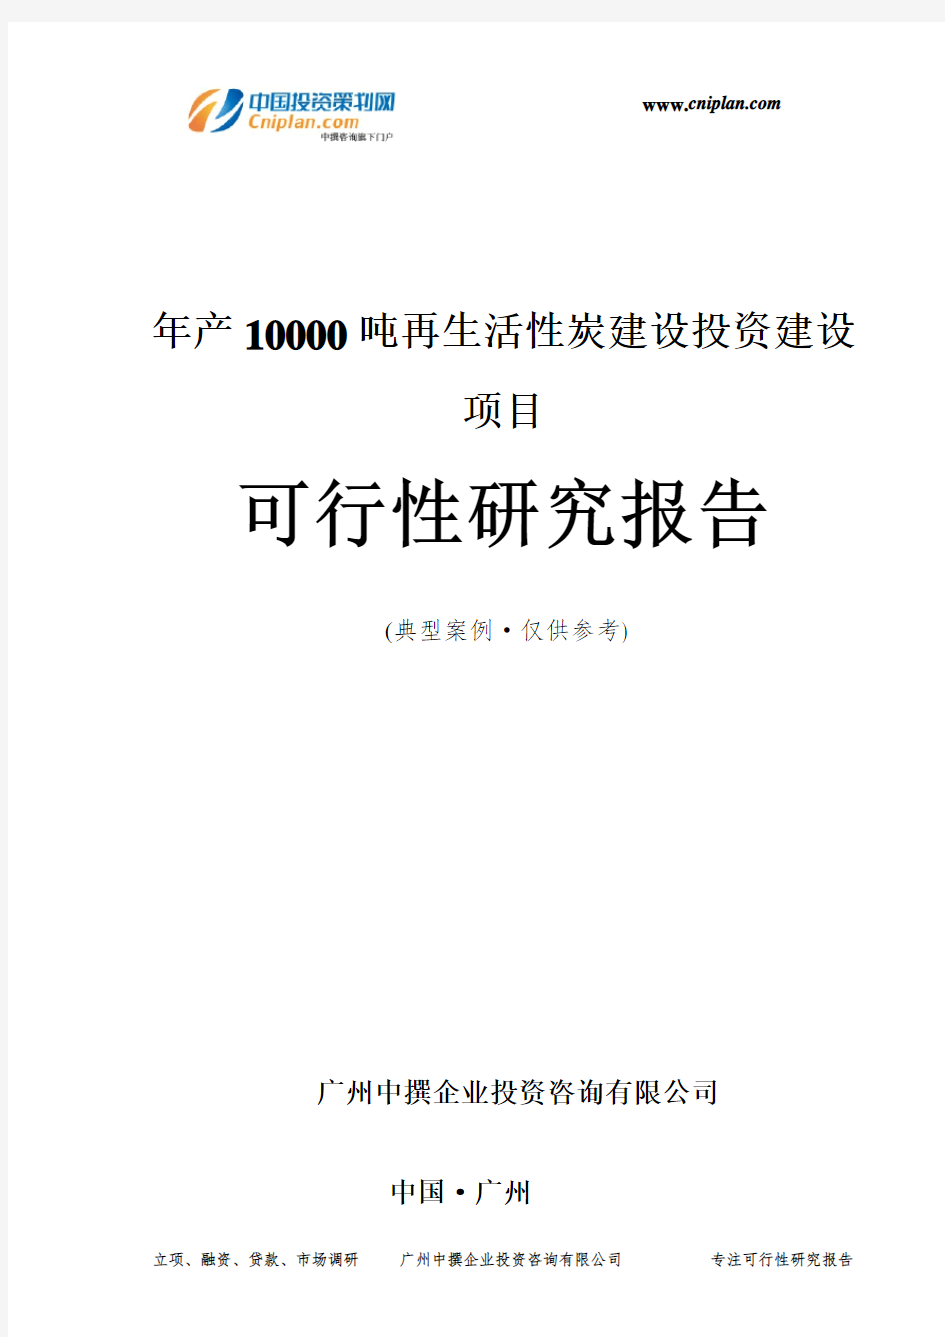 年产10000吨再生活性炭建设投资建设项目可行性研究报告-广州中撰咨询